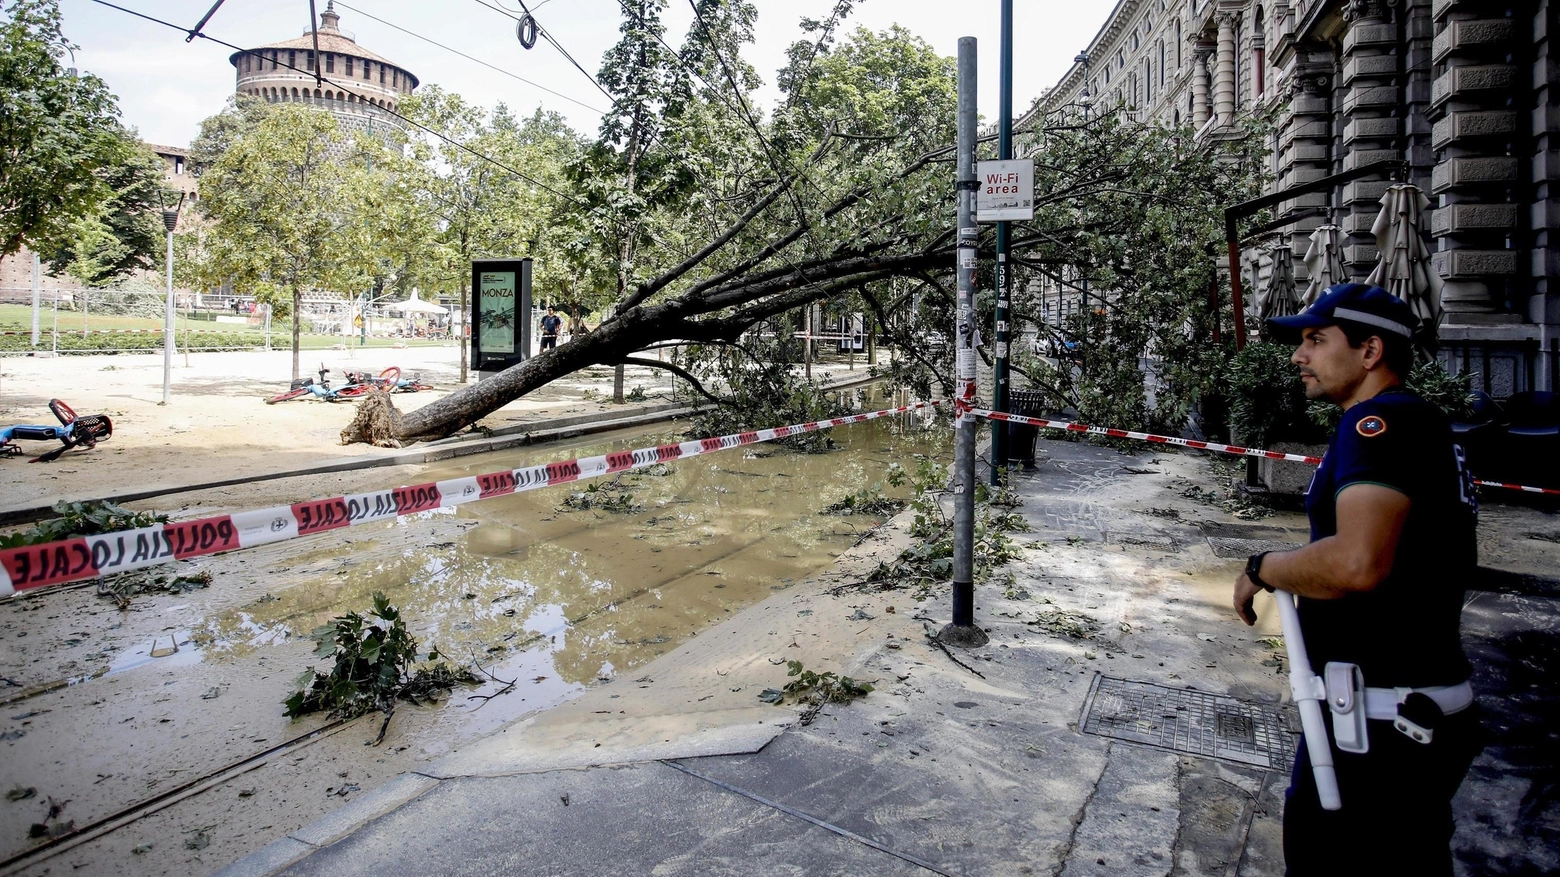 "Milano sfregiata  Centinaia di alberi crollati  Dopo 24 ore da incubo   la città è una giungla